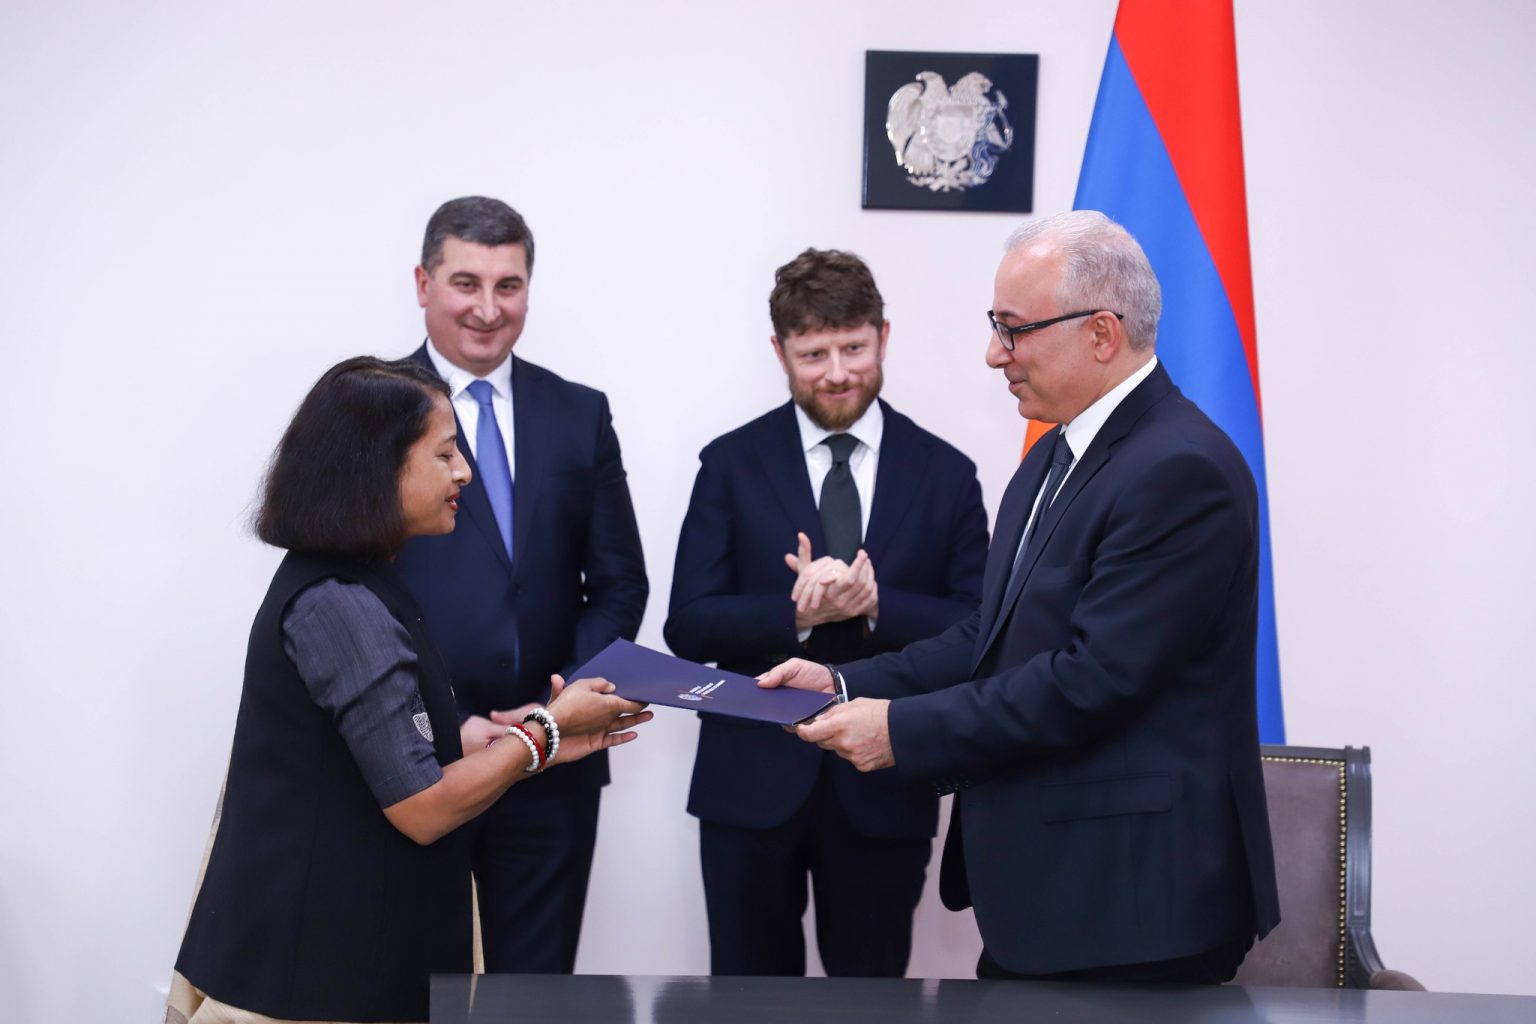 Հայաստանը միացել է «Միջազգային արևային դաշինքի հիմնադրման մասին» շրջանակային համաձայնագրին